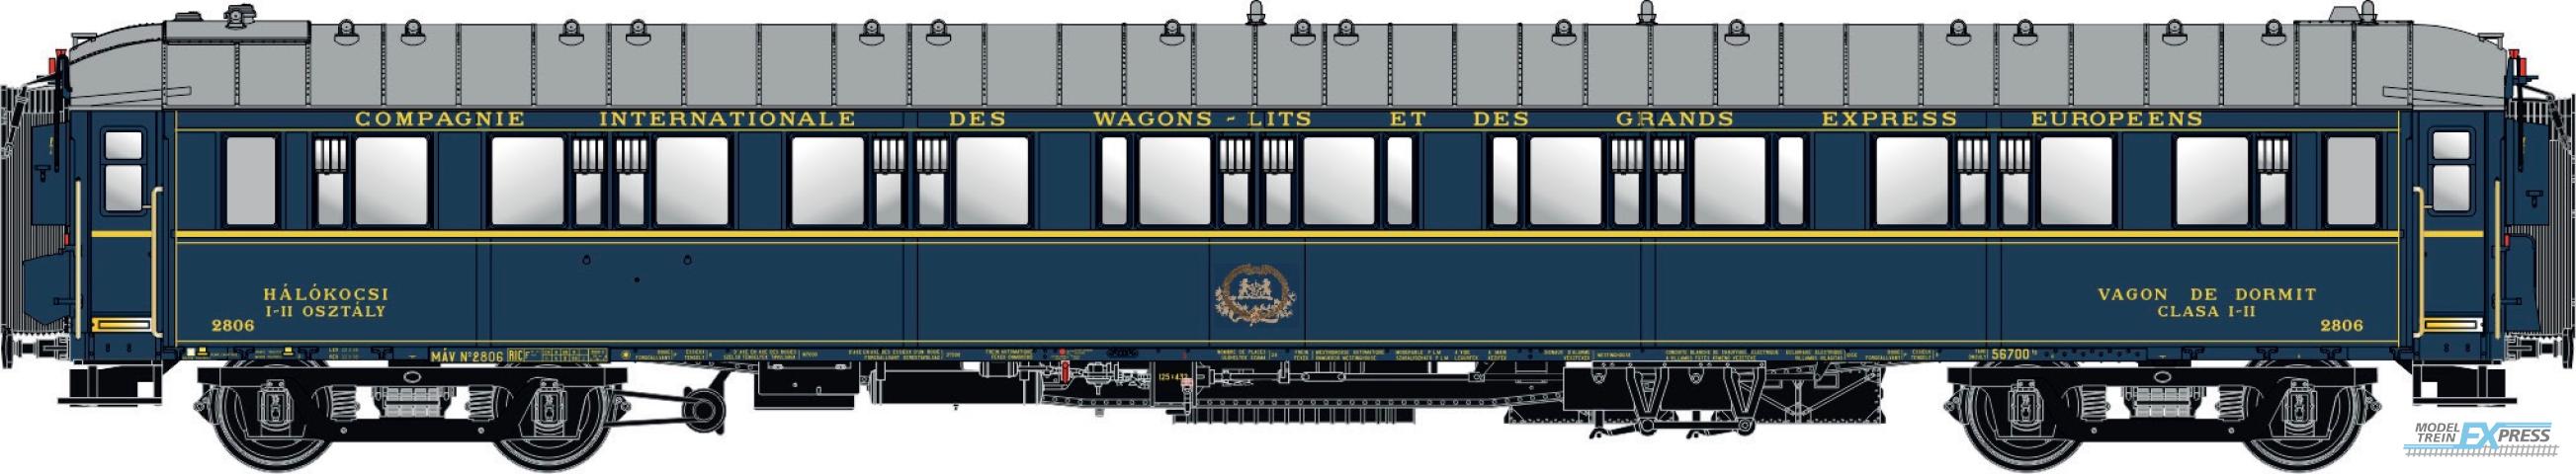 LS Models 49144 S2, blauw, livrei 1930, CIWL, chassis kort, dak normaal, monogram, geregistreerd bij de MAV, met binnenverlichting  /  Ep. II  /  CIWL  /  HO  /  DC  /  1 P.